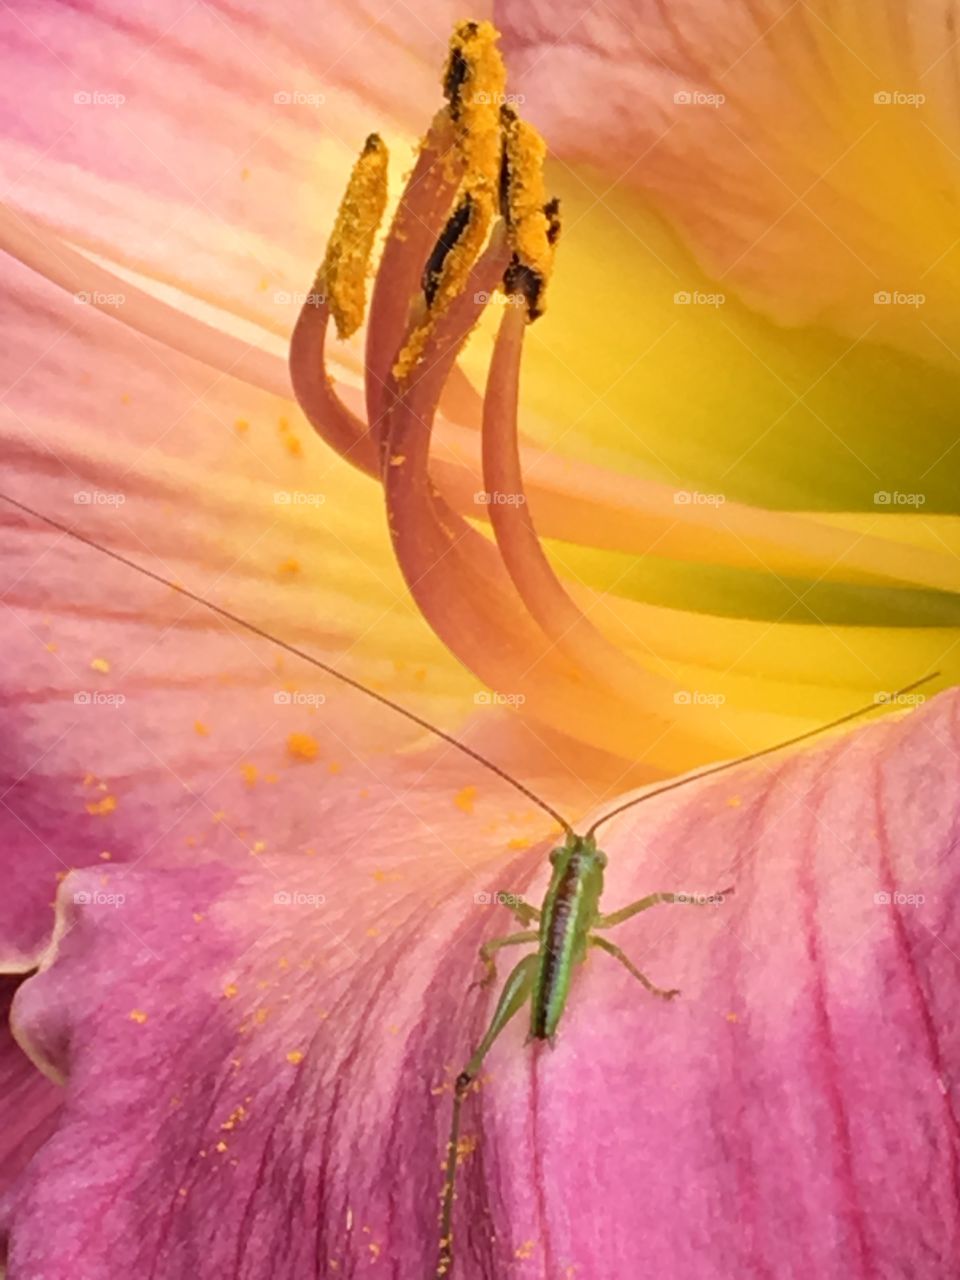 Lily & bug